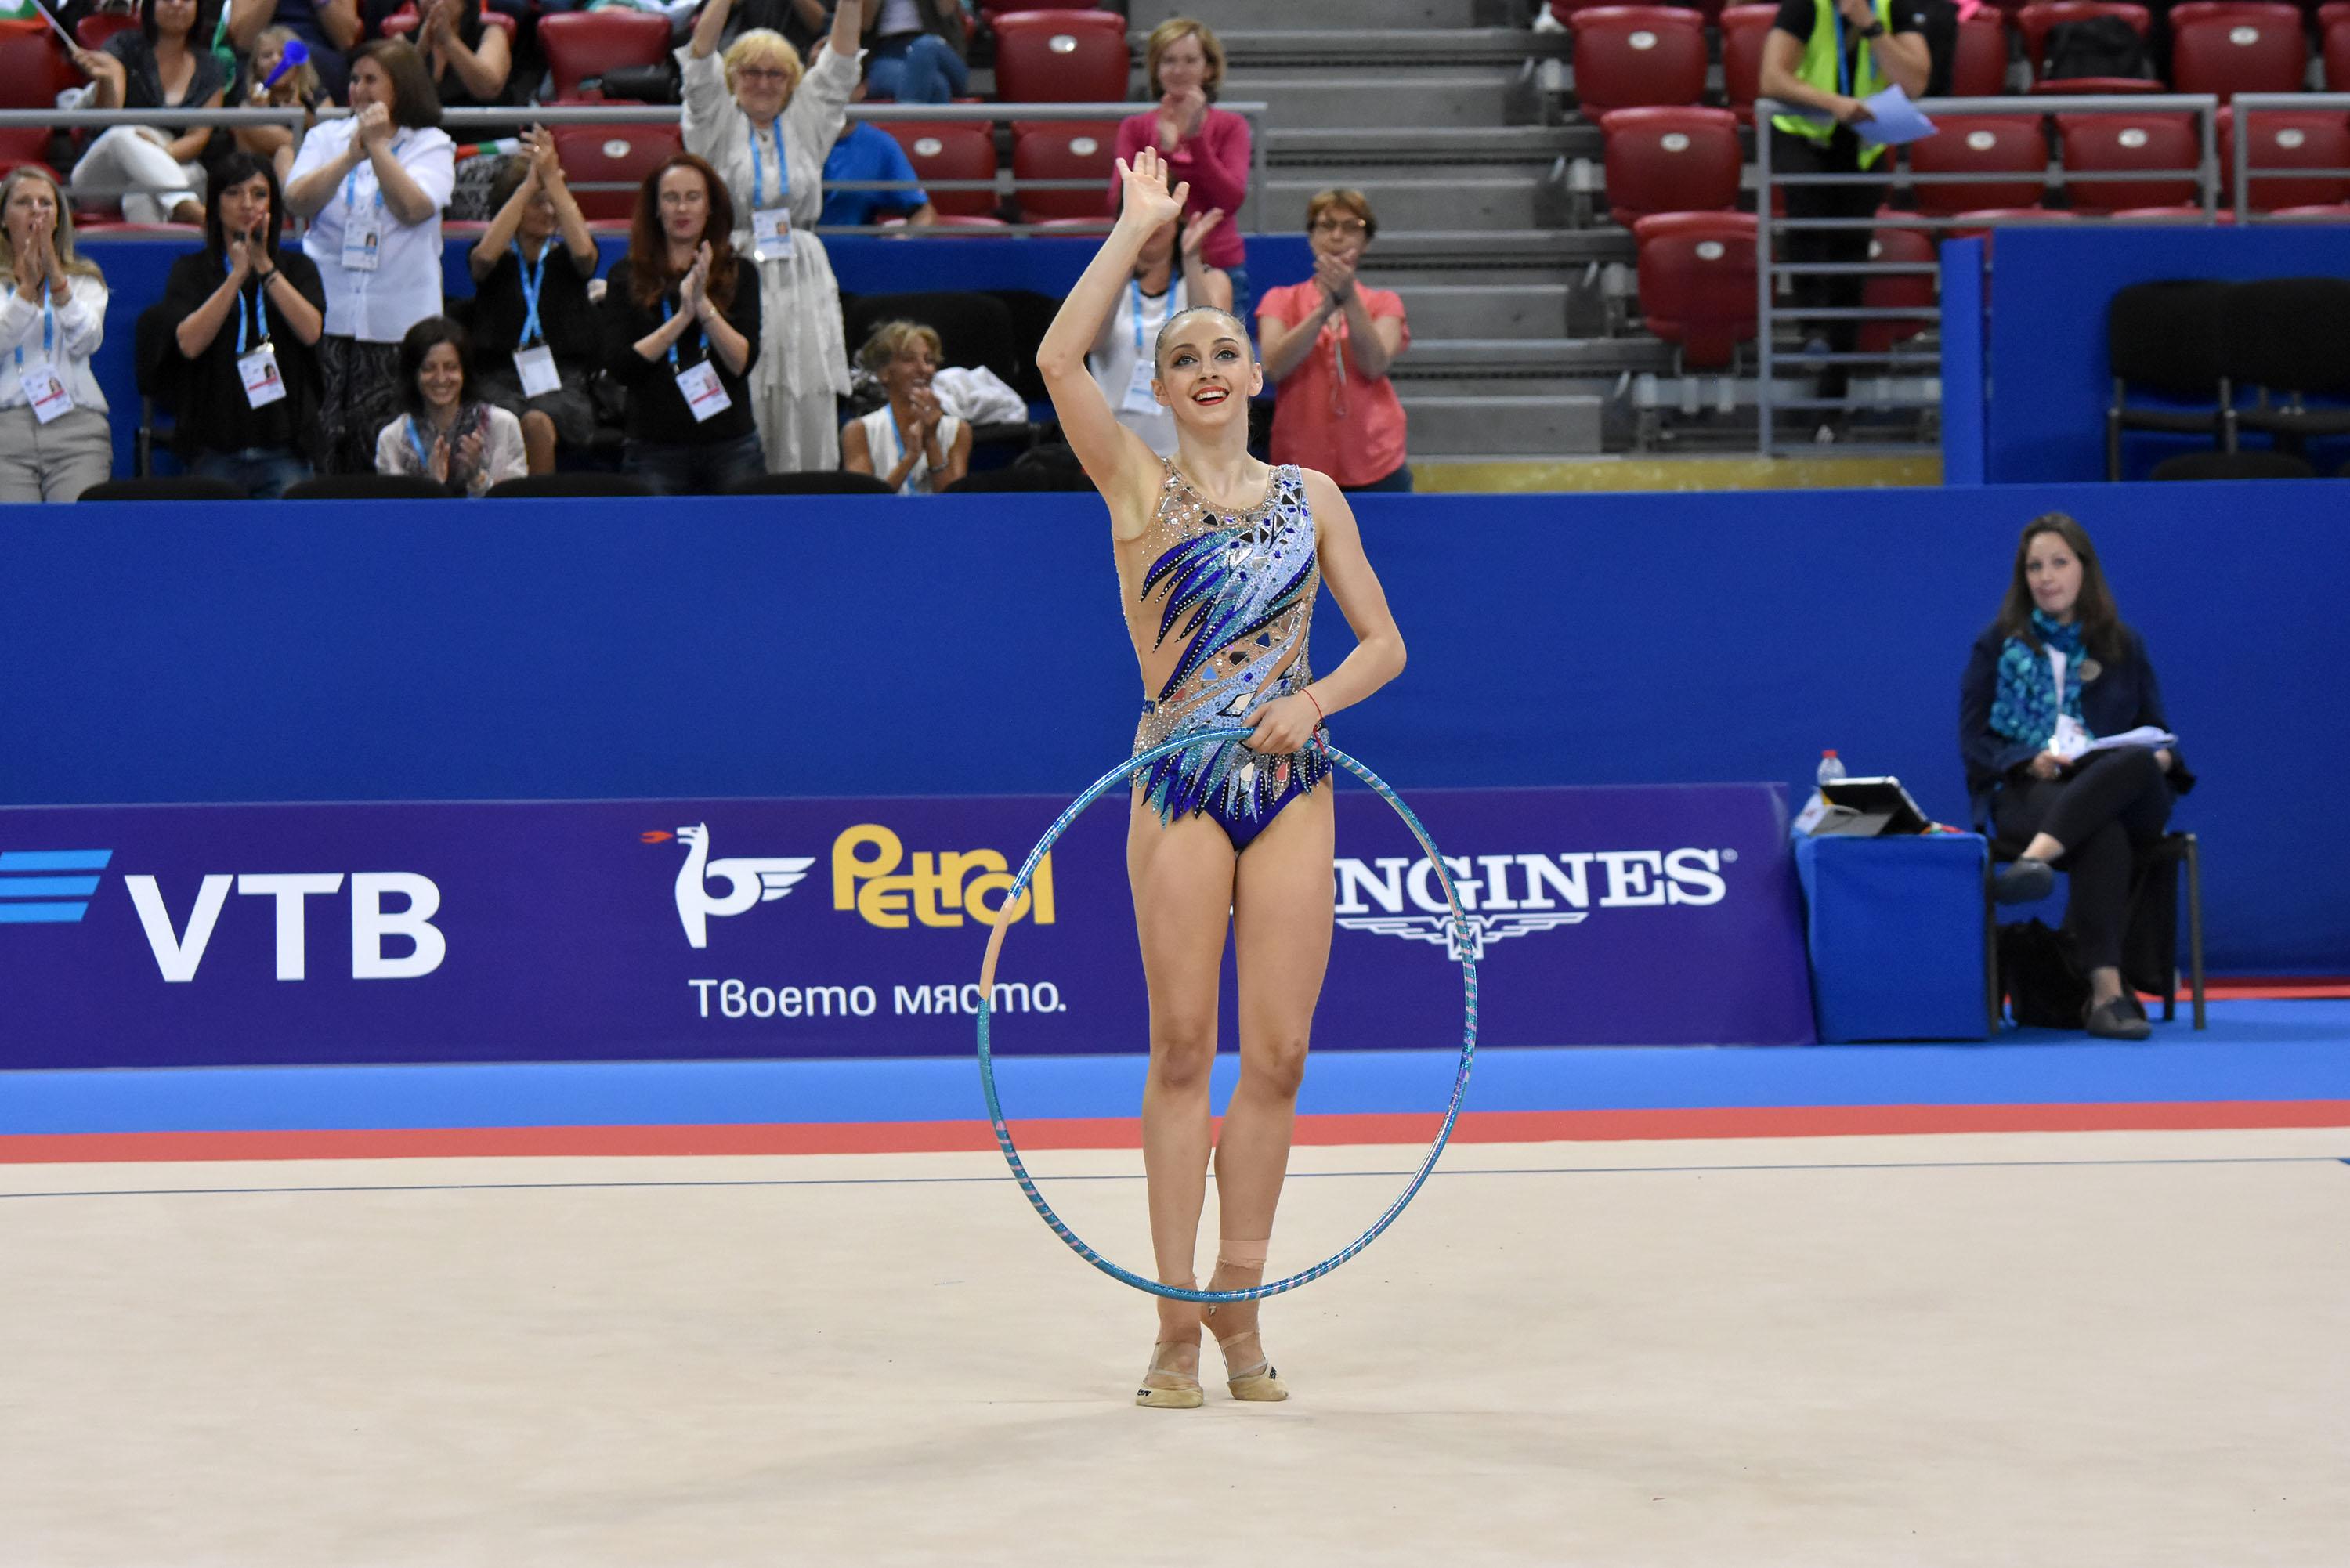 Боряна Калейн завоюва златен медал в многобоя по художествена гимнастика